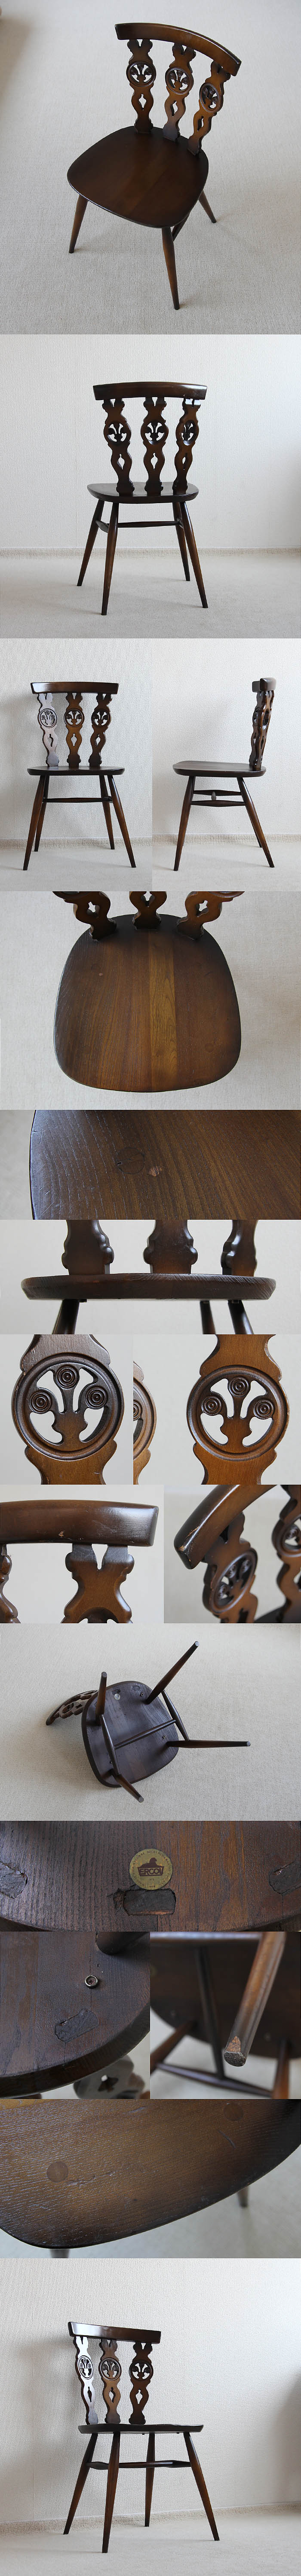 イギリス ヴィンテージ アーコールチェア ERCOL 木製椅子 アンティーク 家具「シスルバックチェア」P-061